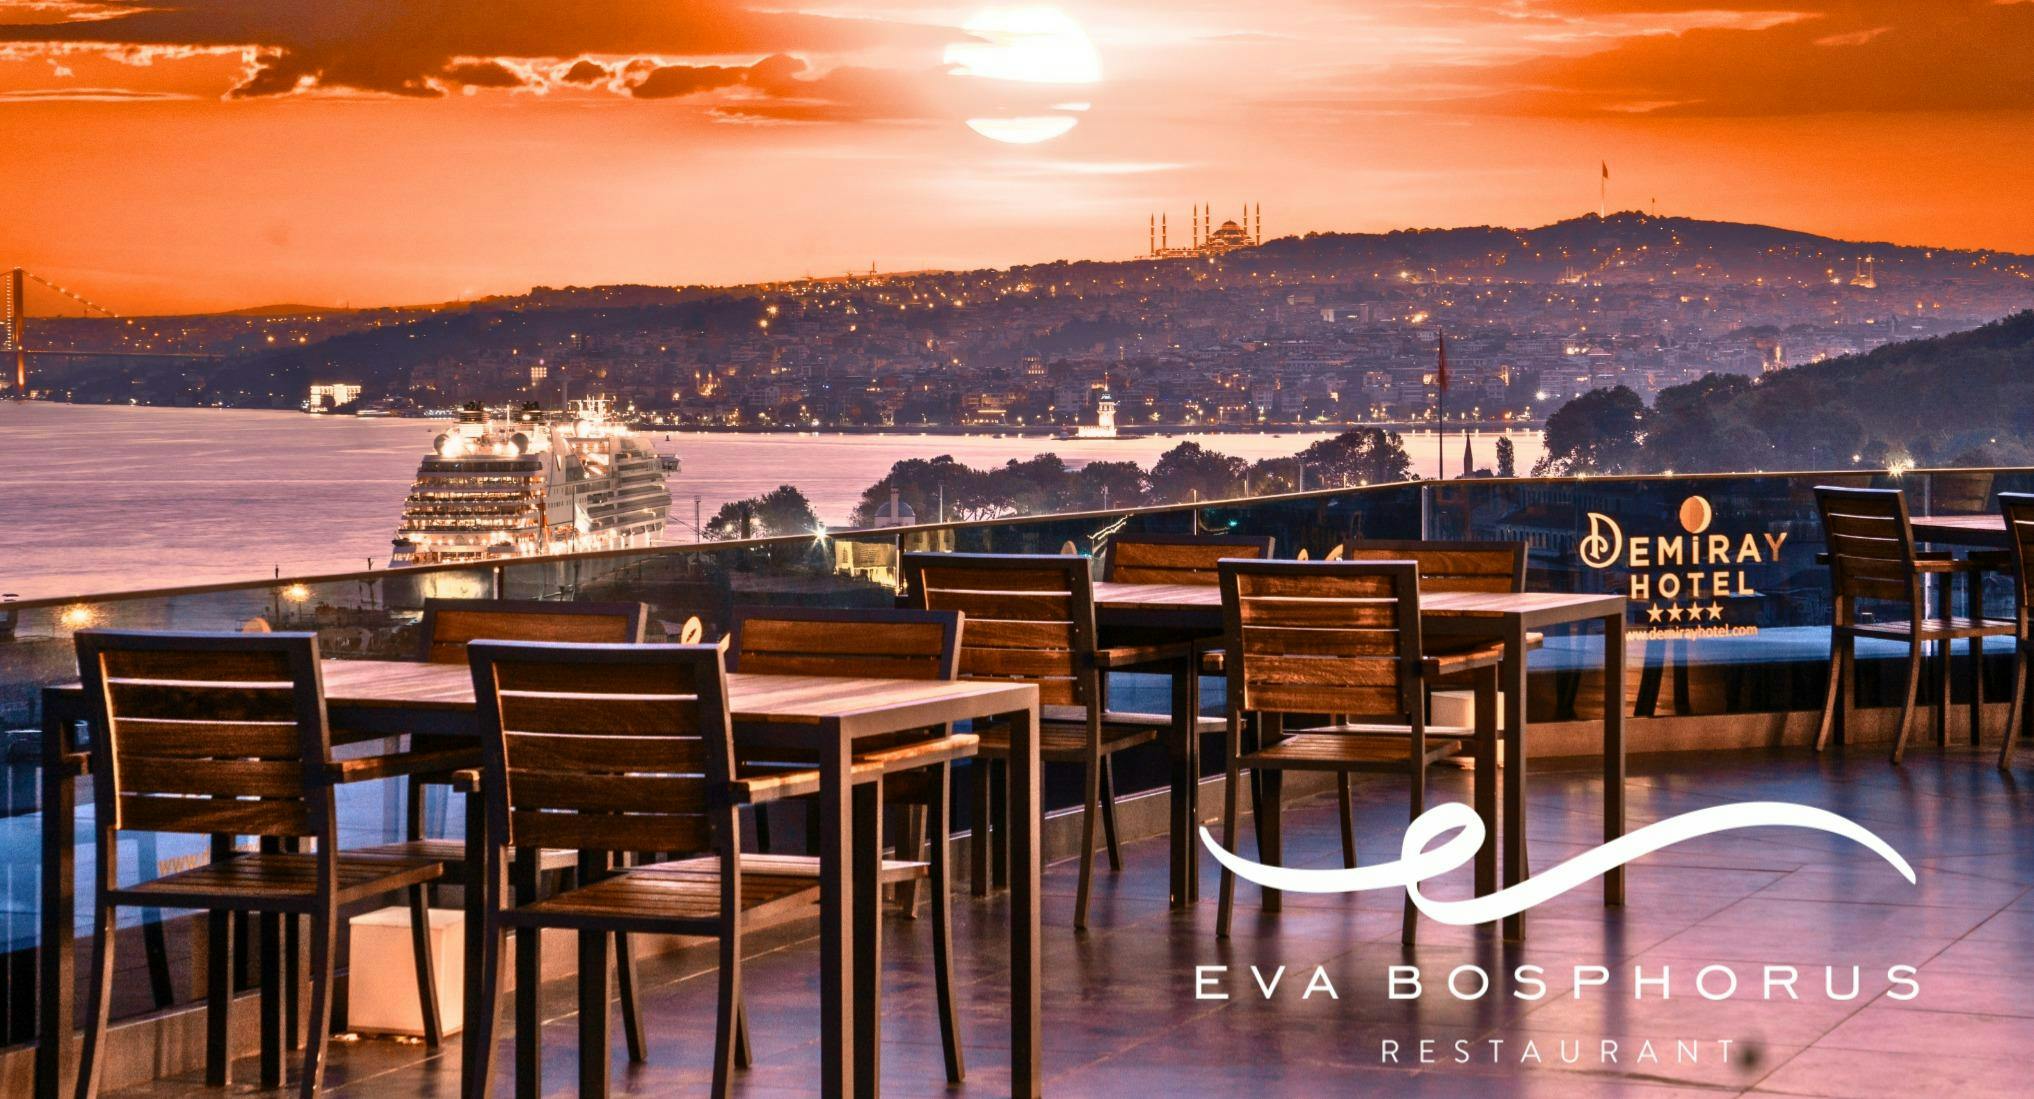 Photo of restaurant Eva Bosphorus Restaurant in Fatih, Istanbul